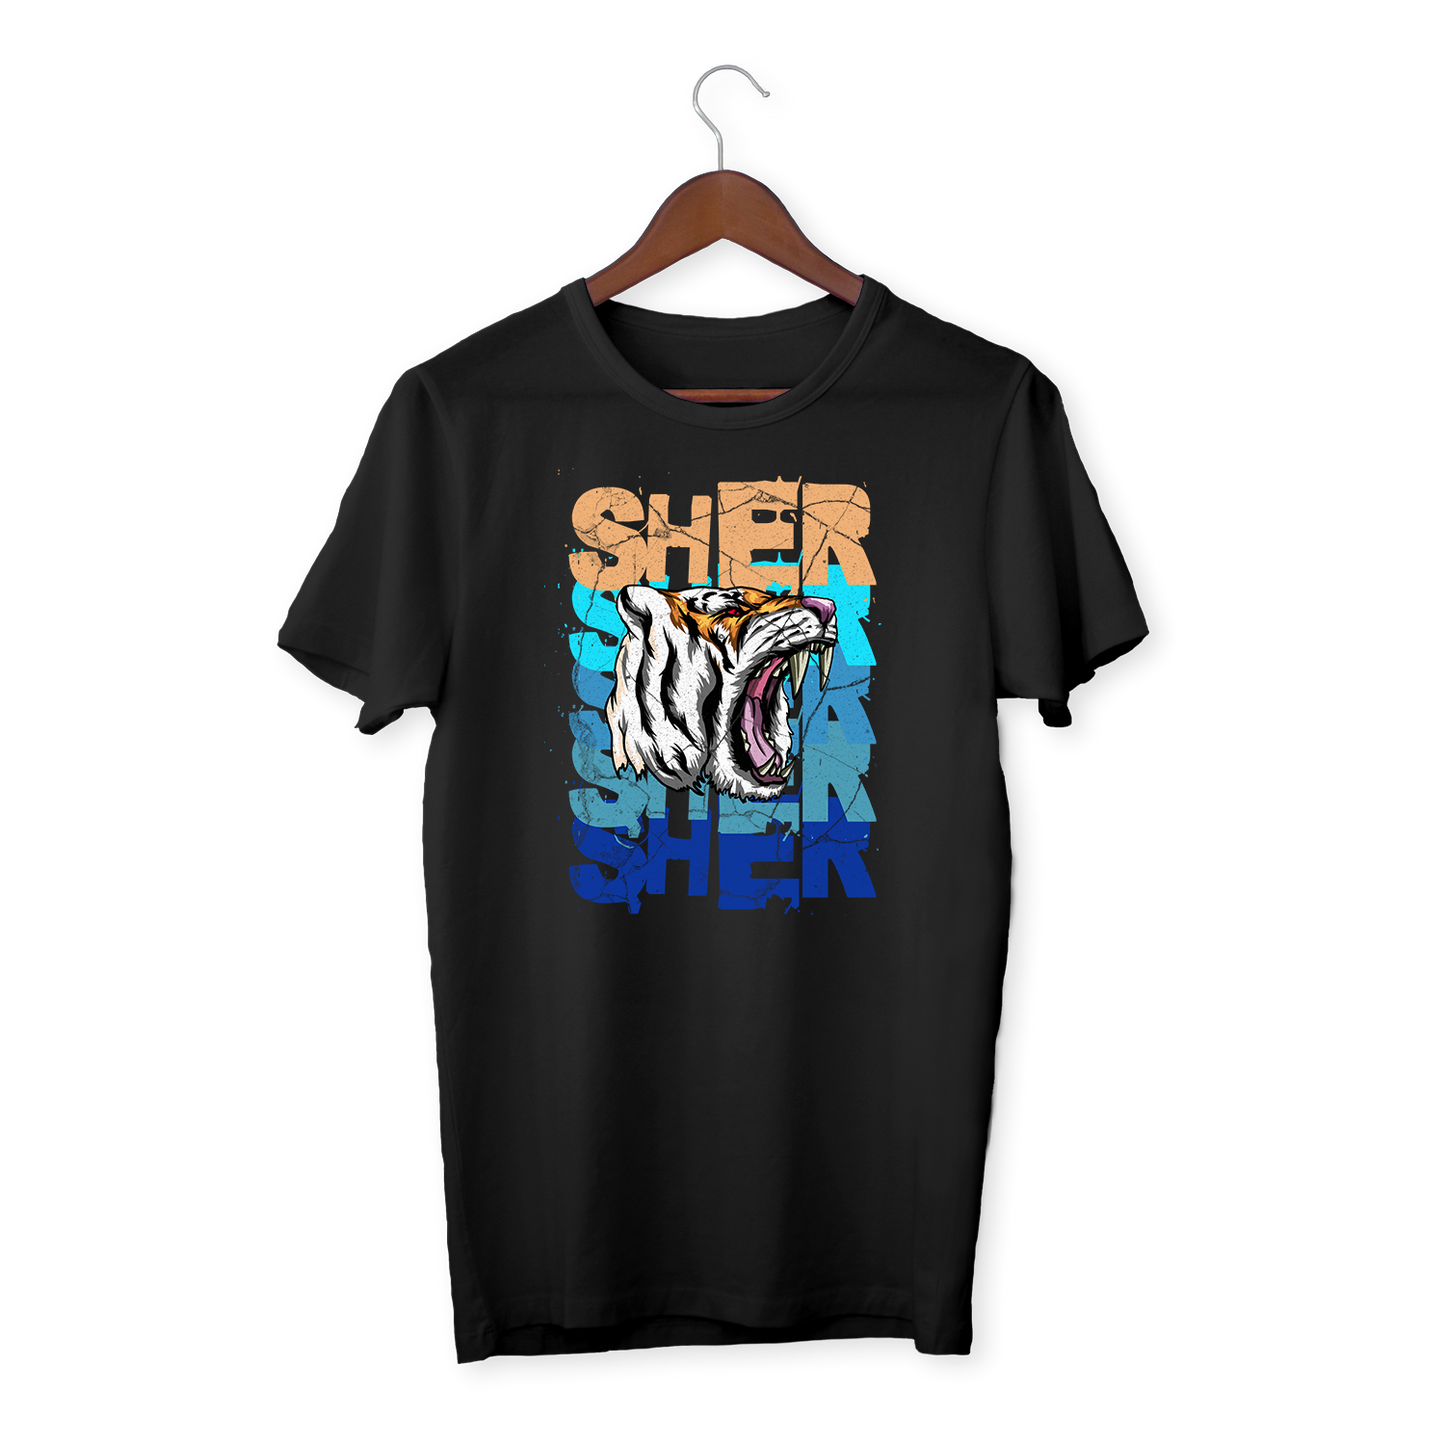 SHER SHER - Unisex organic cotton t-shirt